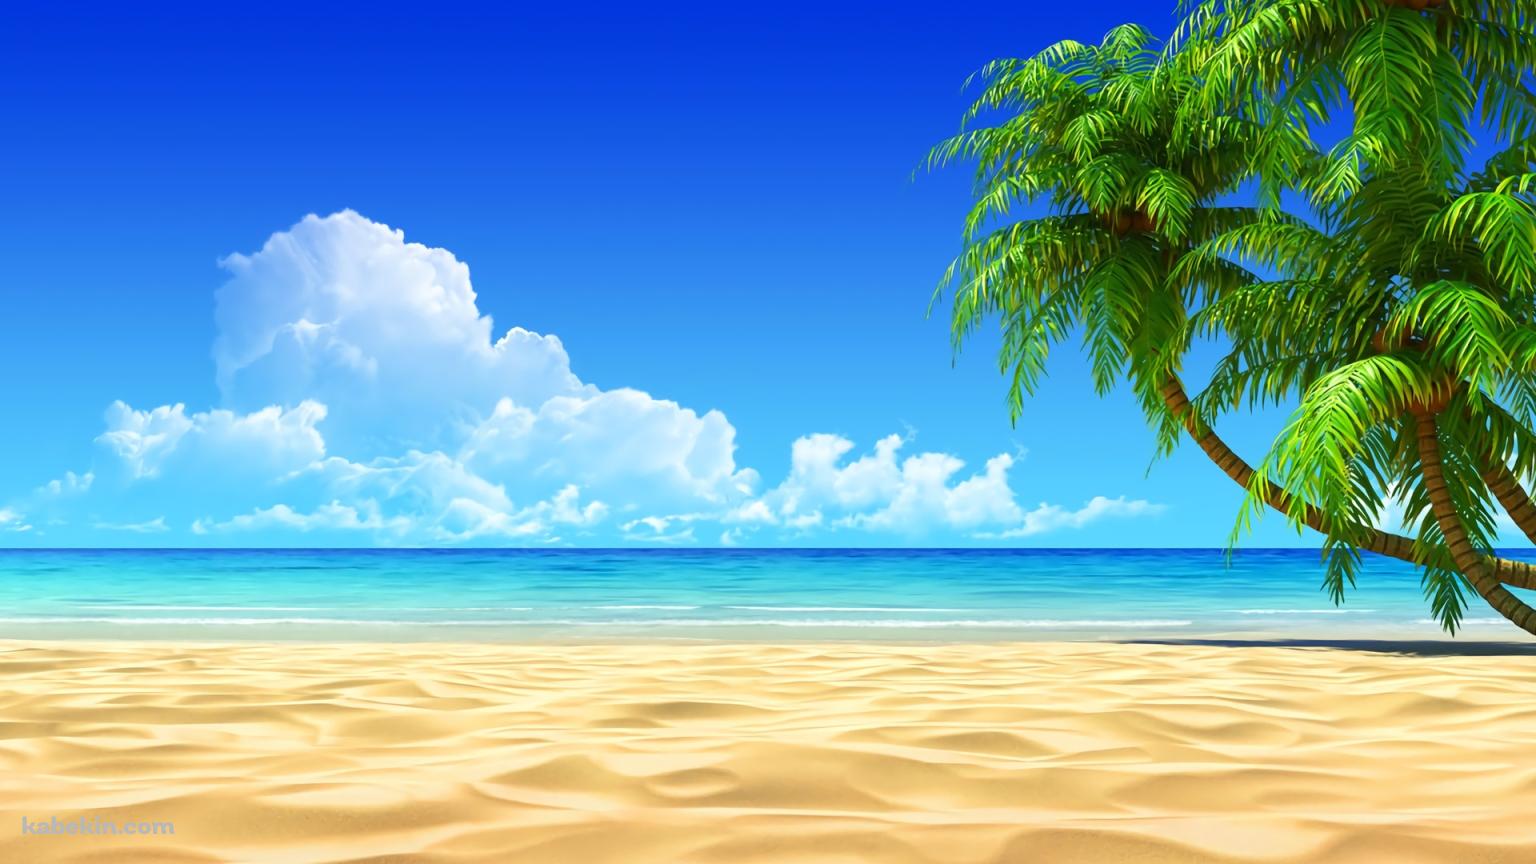 夏 SUMMER ビーチ 椰子の木 青空の壁紙(1536px x 864px) 高画質 PC・デスクトップ用